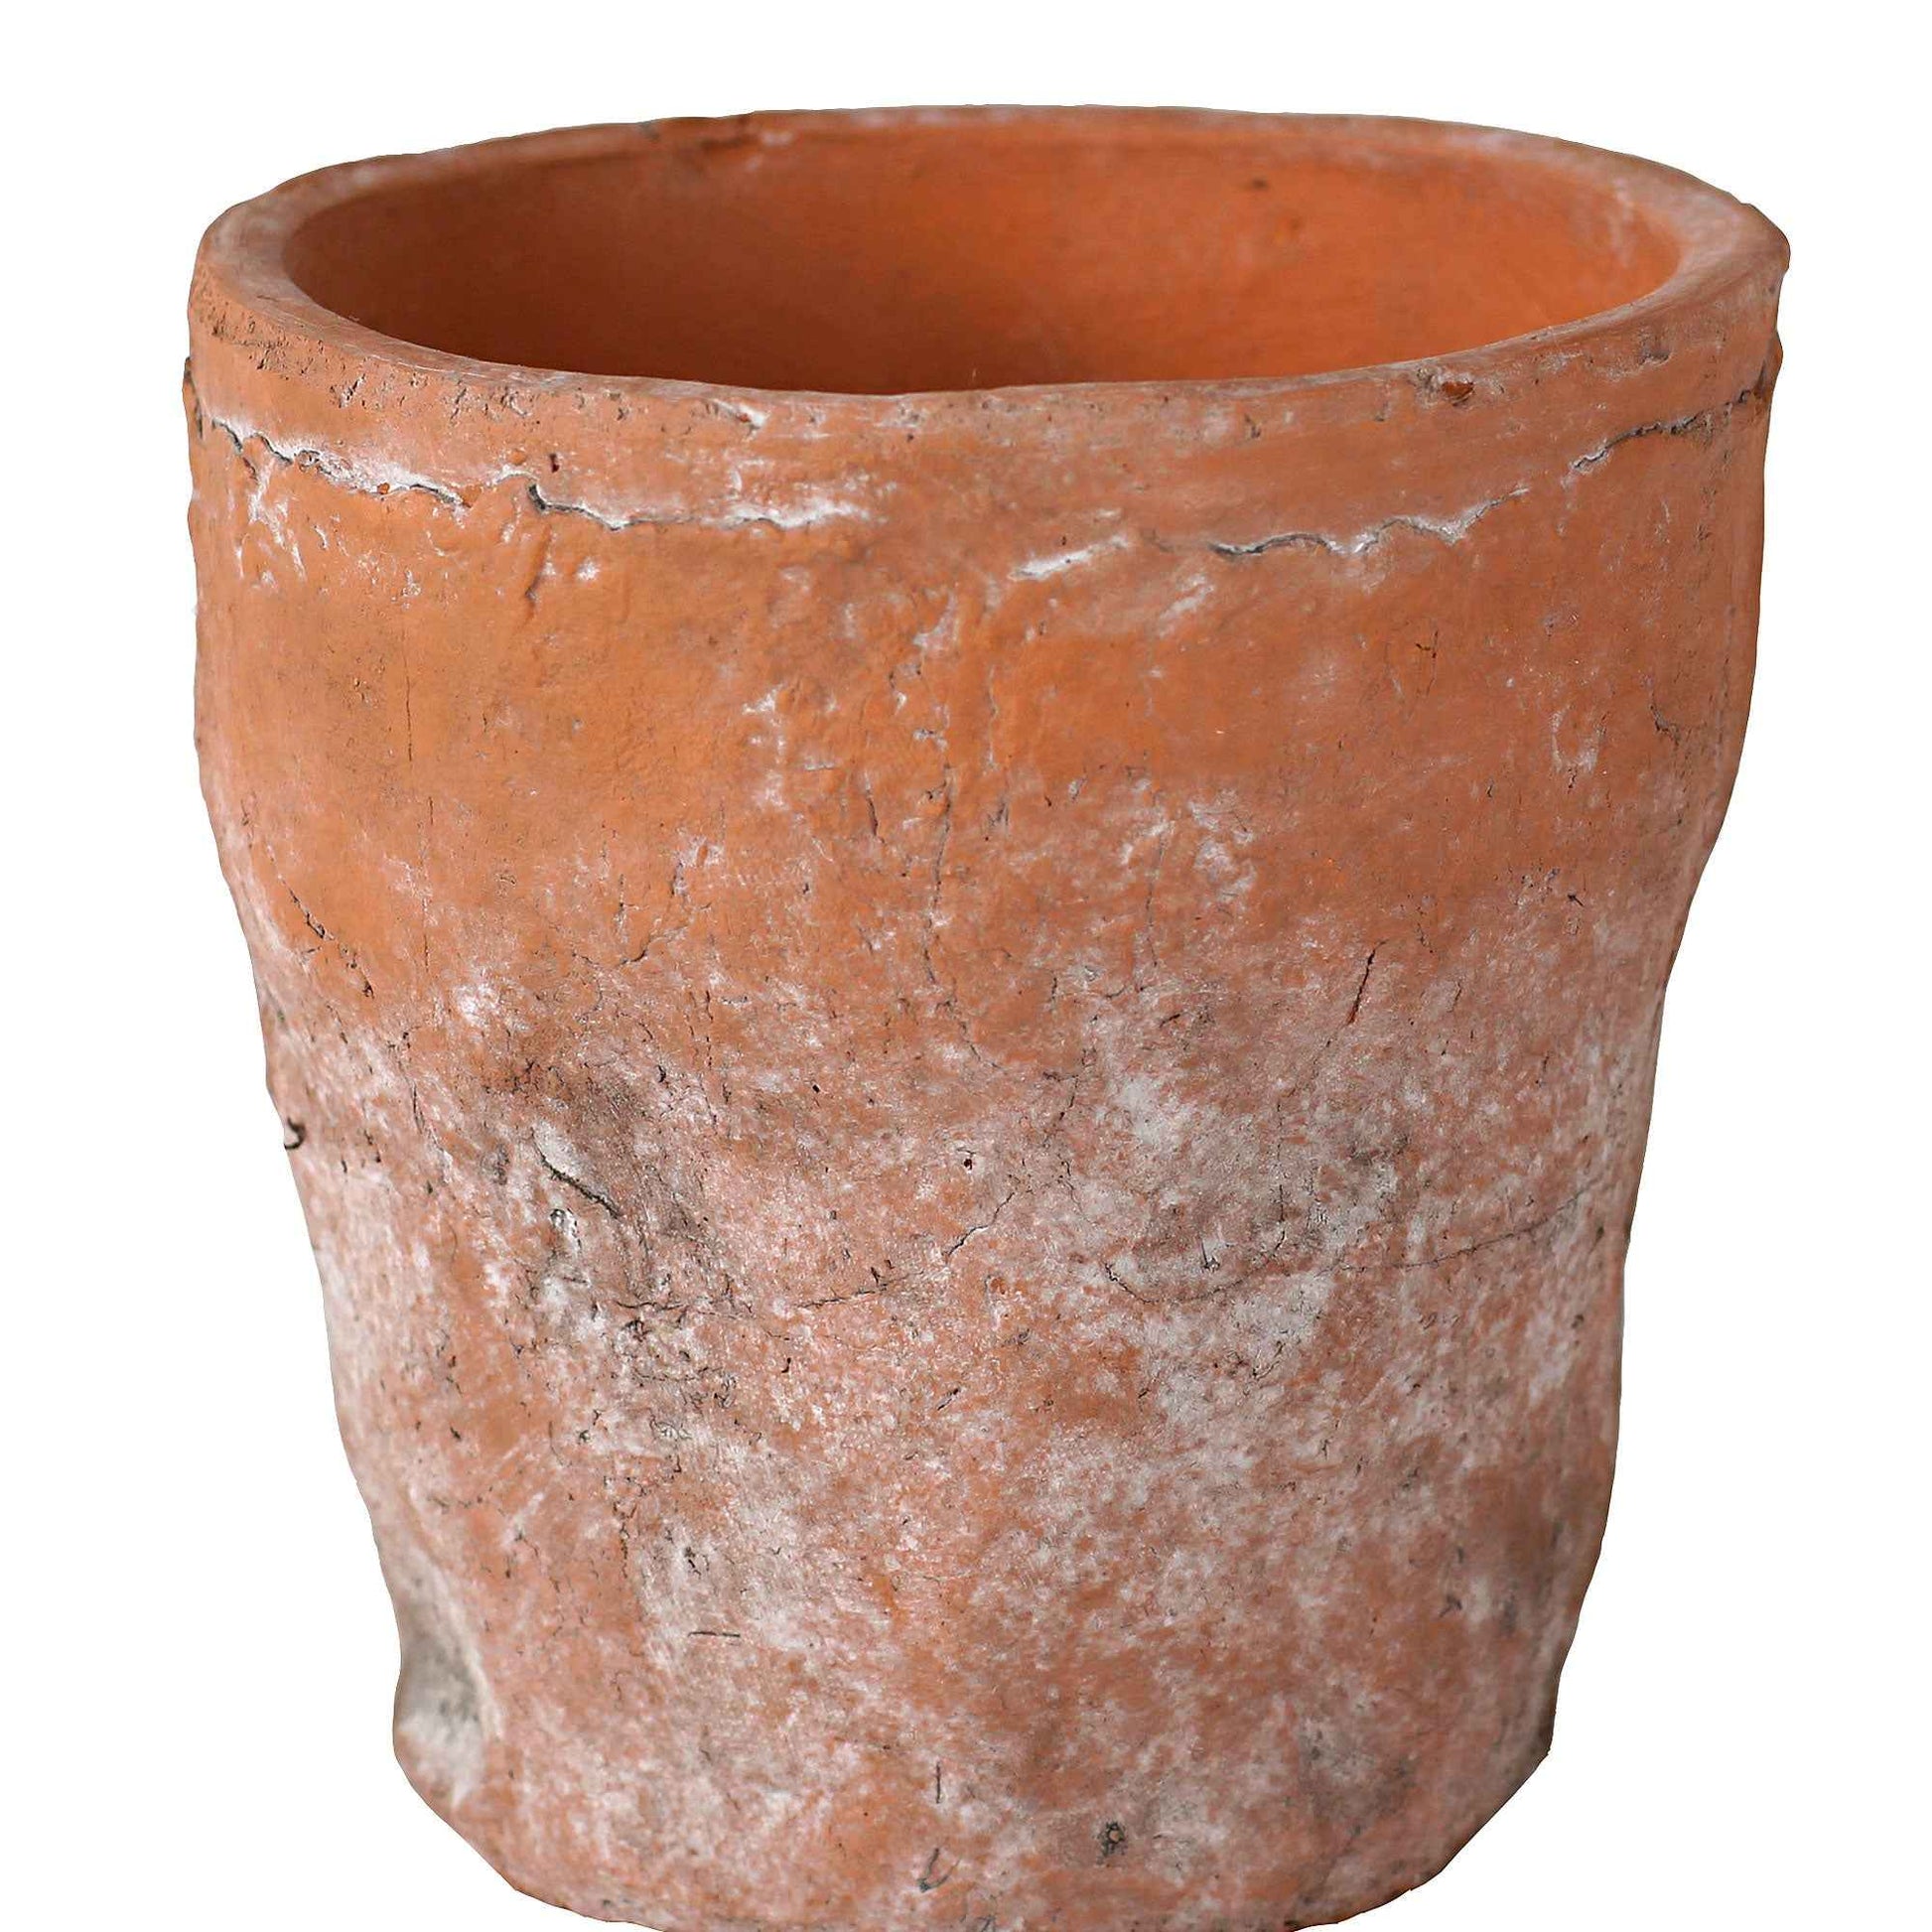 TS pot de fleurs Nature rond terre cuite - Pot pour l'intérieur - Petits pots de fleurs